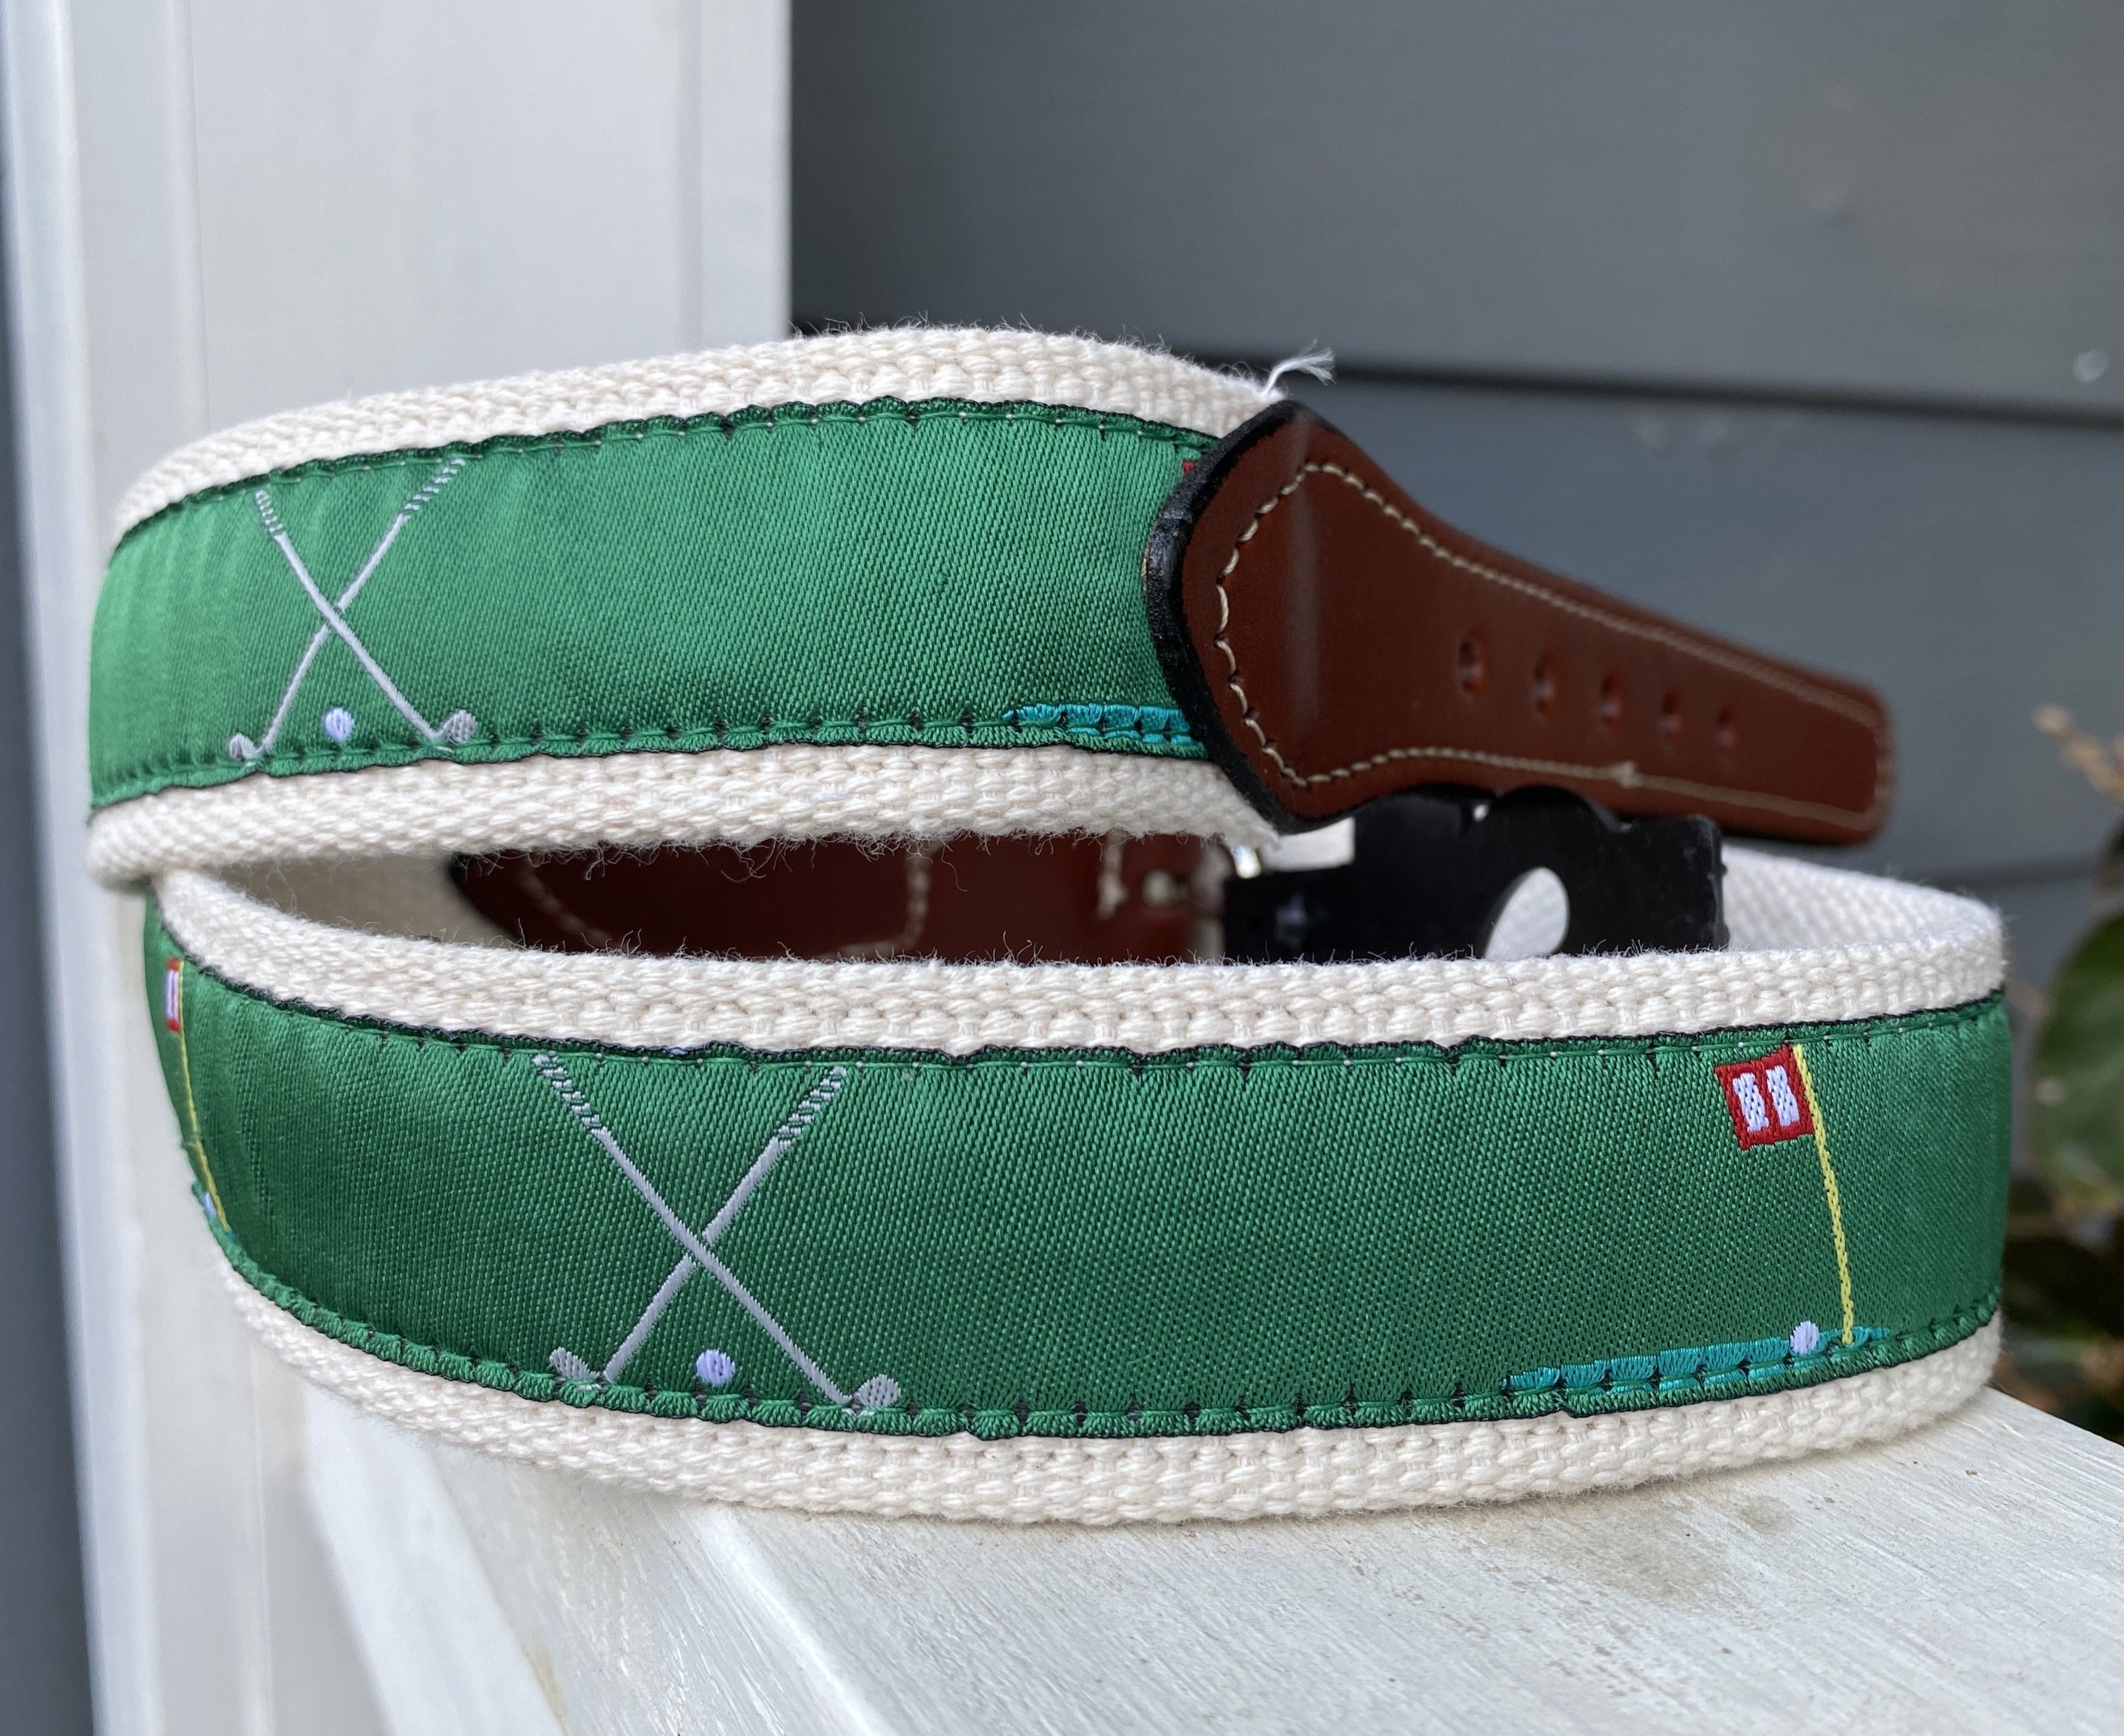 Camo Print Woven Belt, Belts